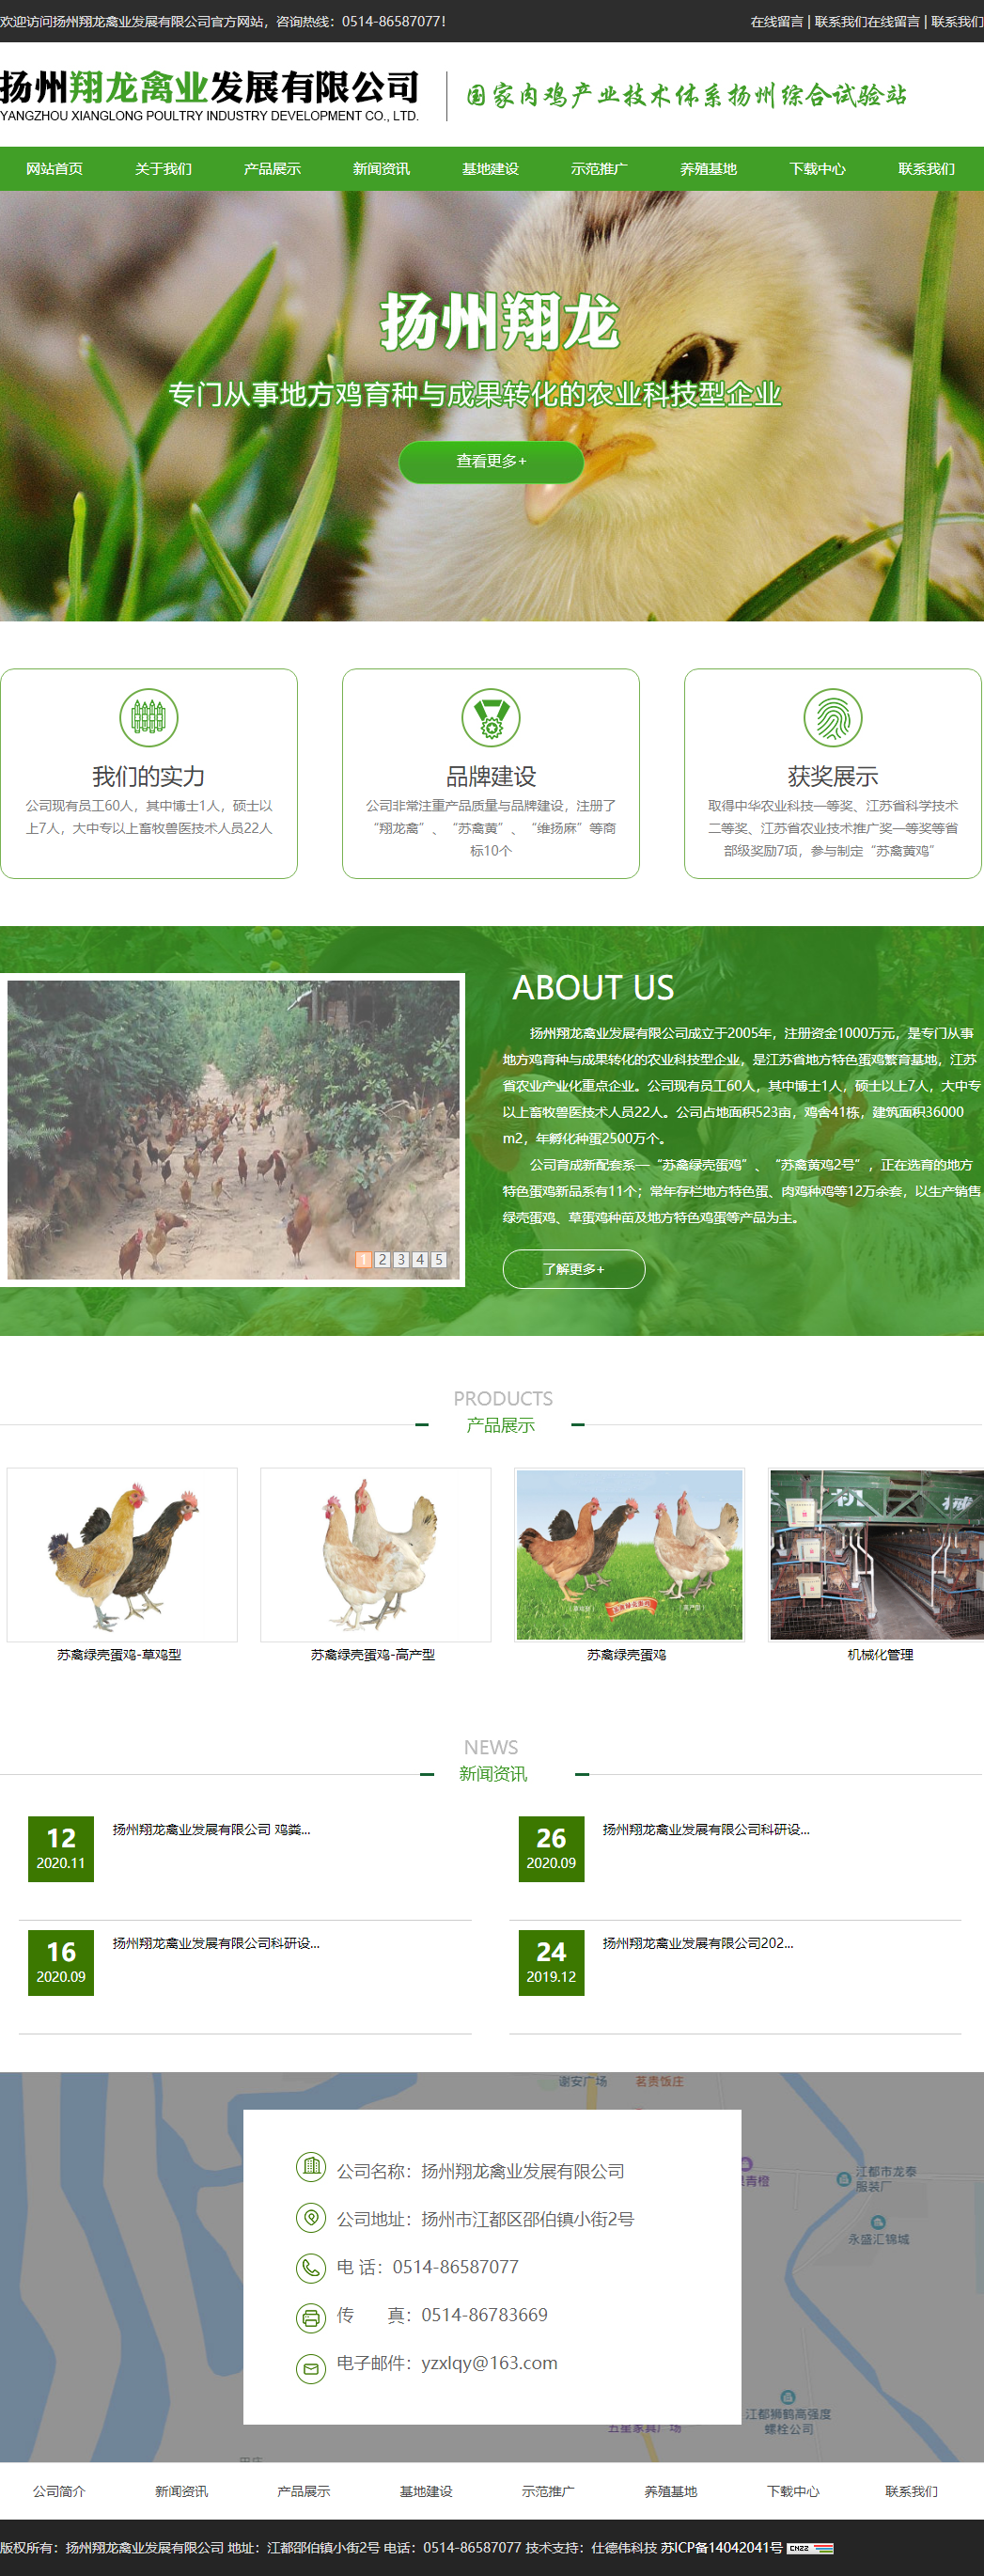 扬州翔龙禽业发展有限公司网站案例